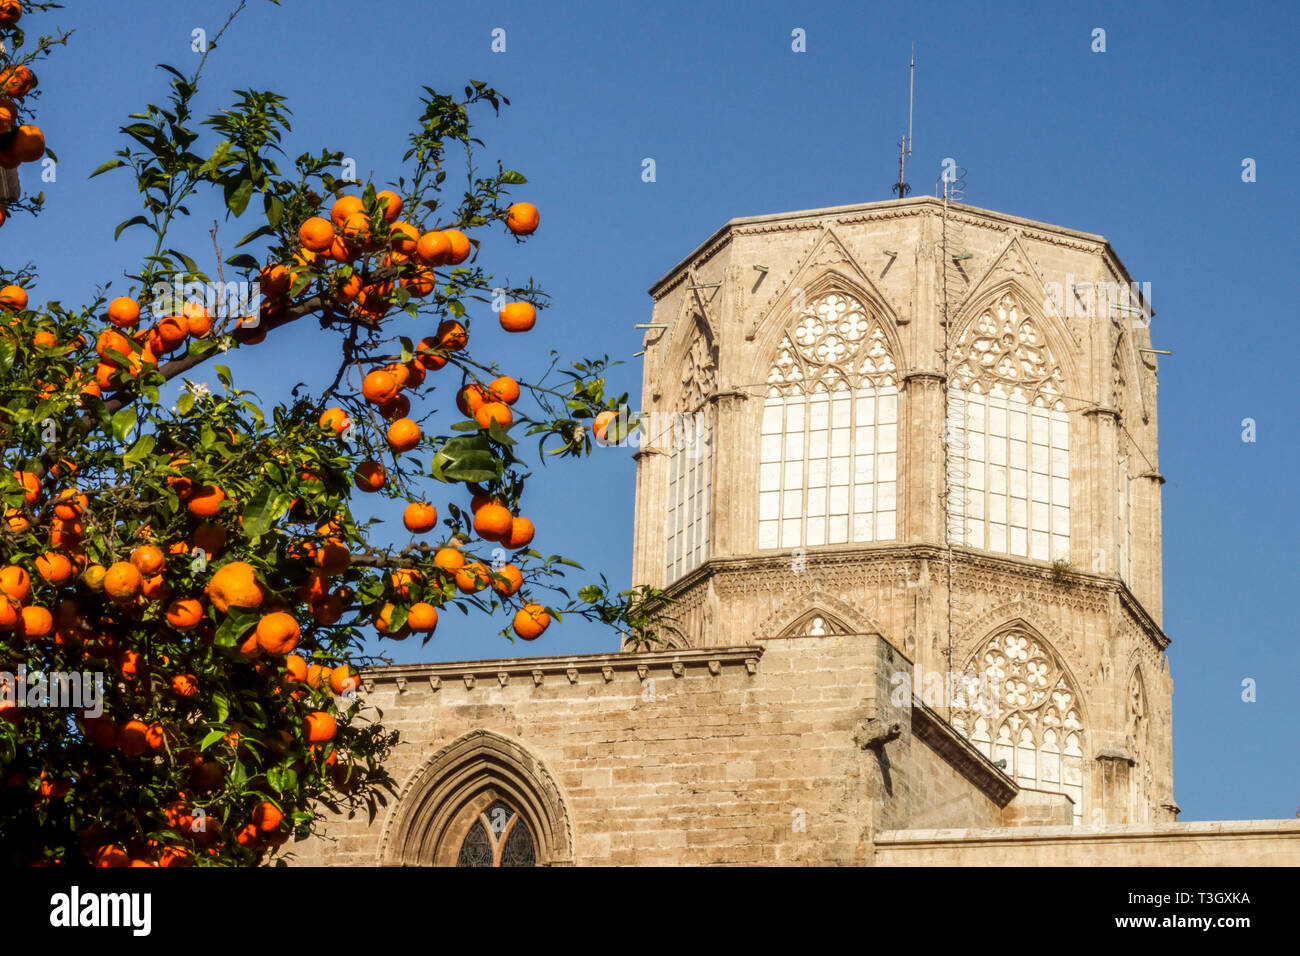 Kathedrale von Valencia Orangenbaum in der Altstadt von Valencia, unvollendeter Turm Gotische Architektur aus dem Mittelalter Valencia Spanien Europa Kathedralengebäude Stockfoto